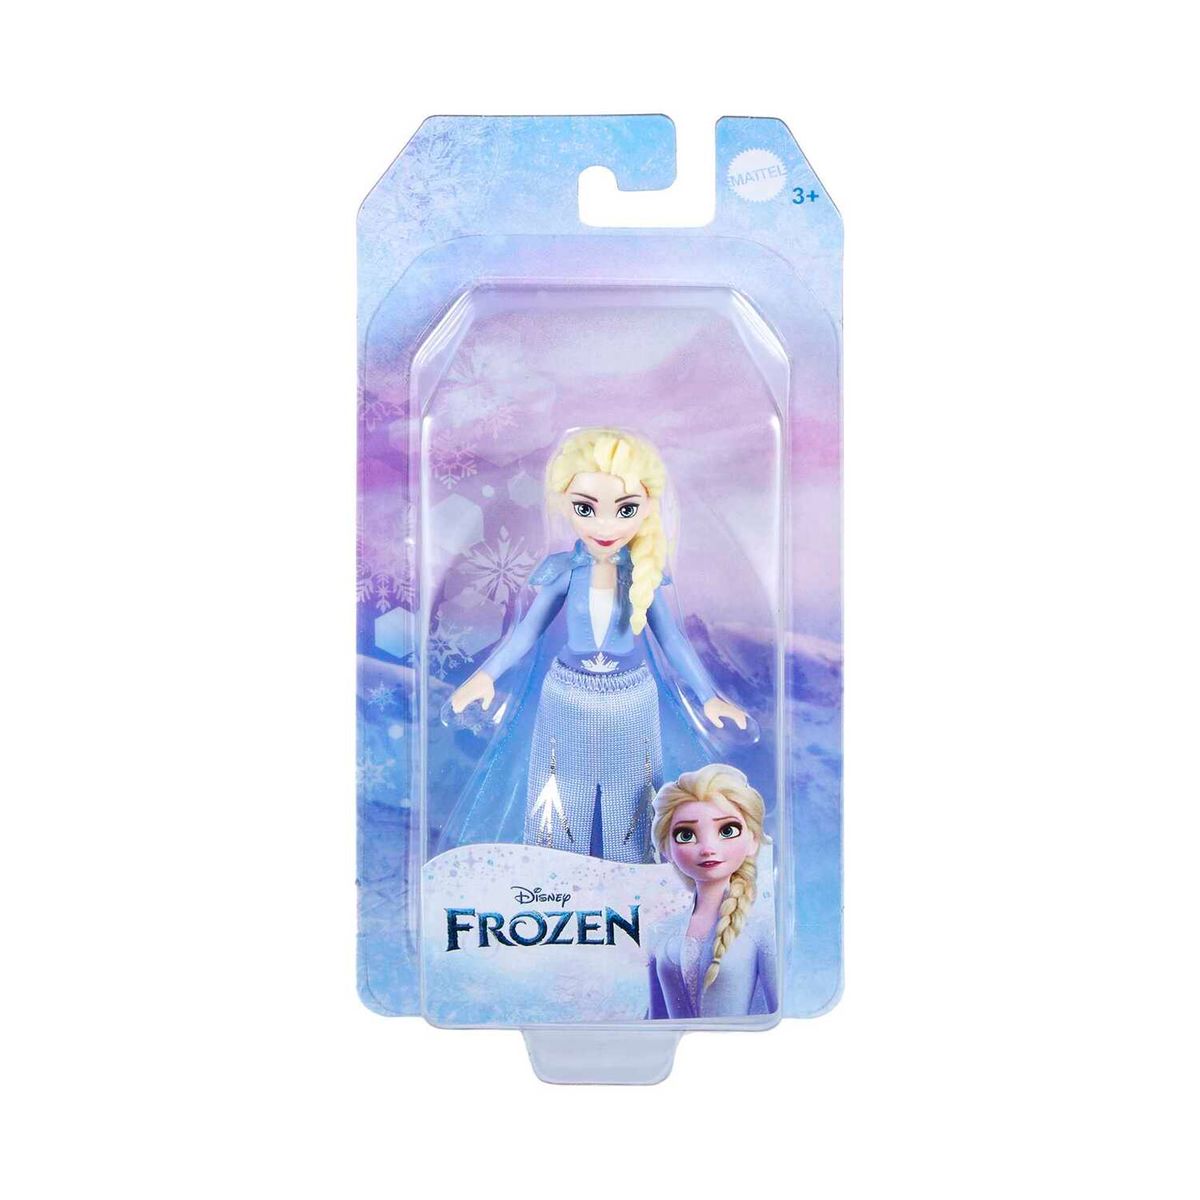 Poupée Mattel Disney Reine des neiges 2 poupée Elsa